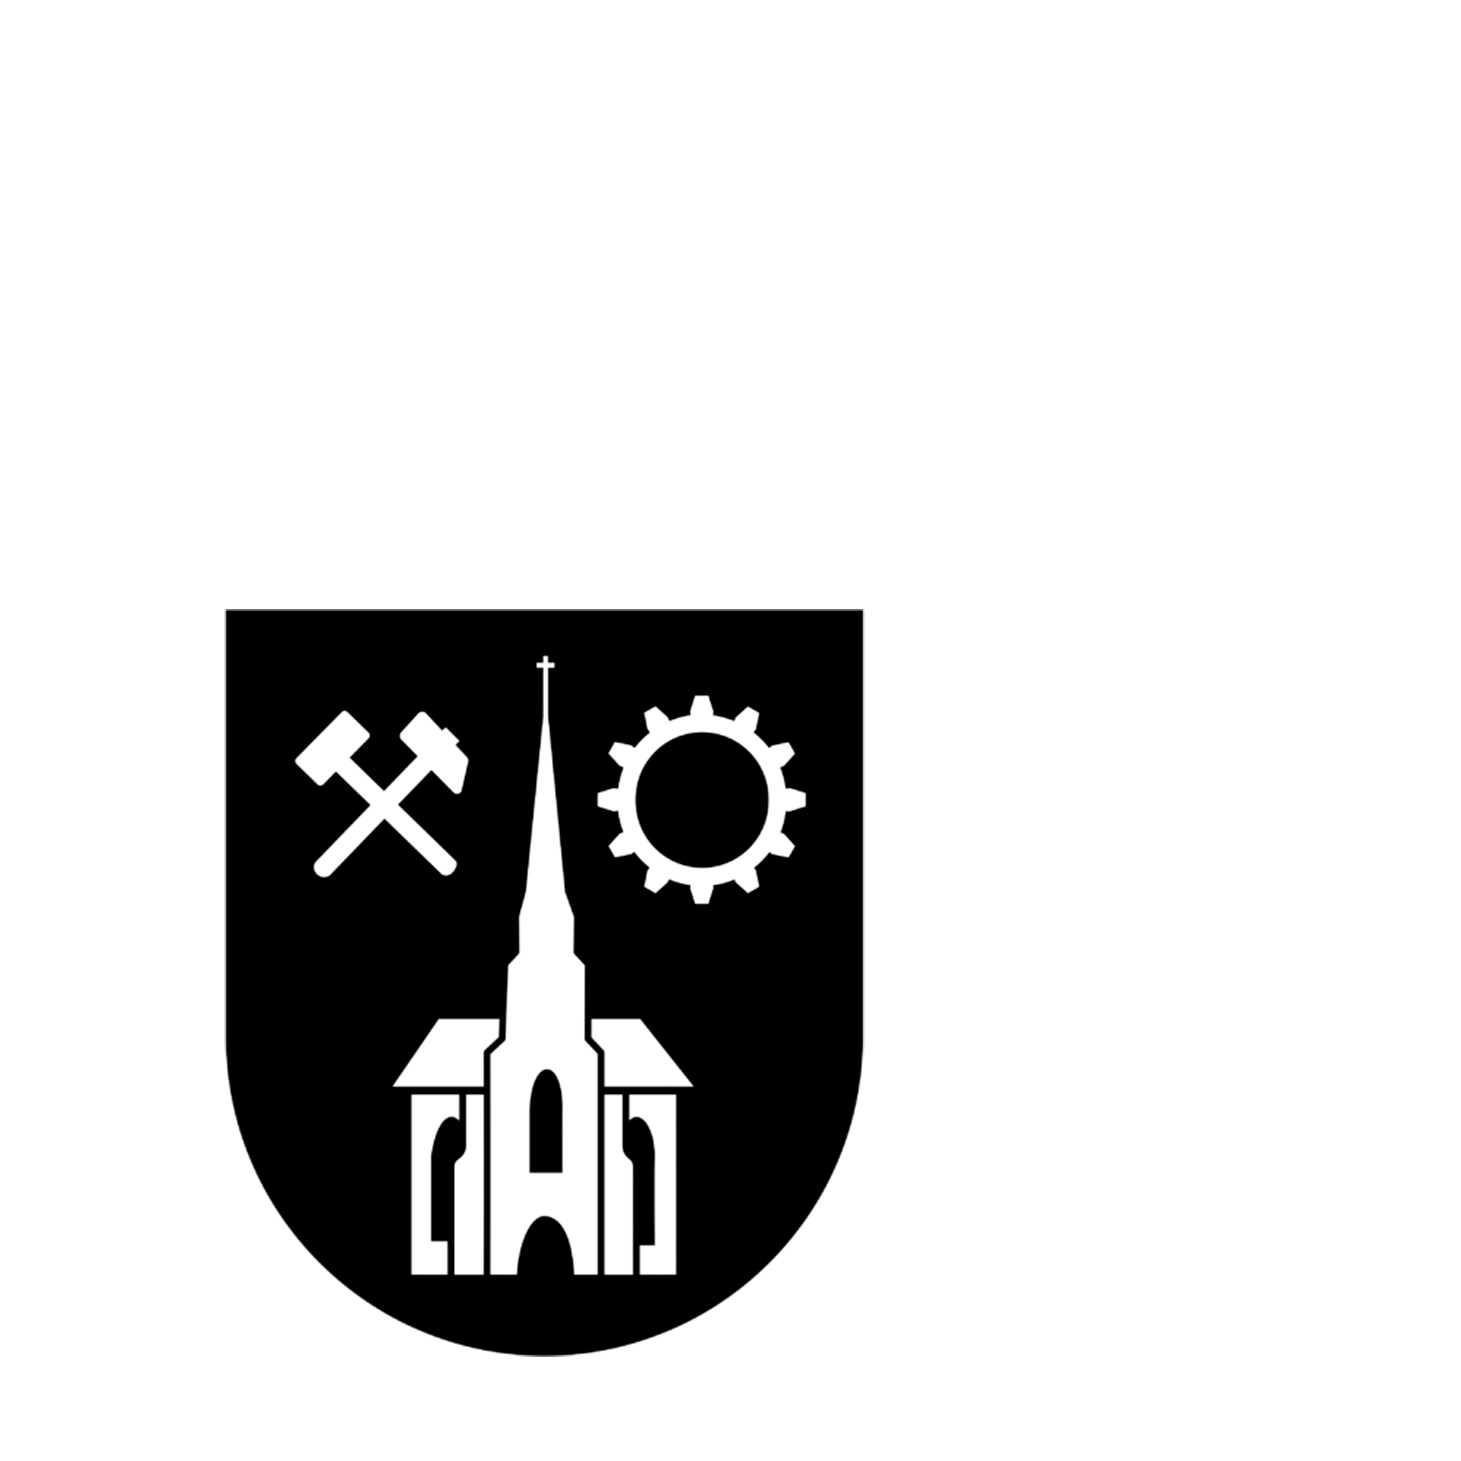 Wappen der Kreisstadt Neunkirchen - © Kreisstadt Neunkirchen